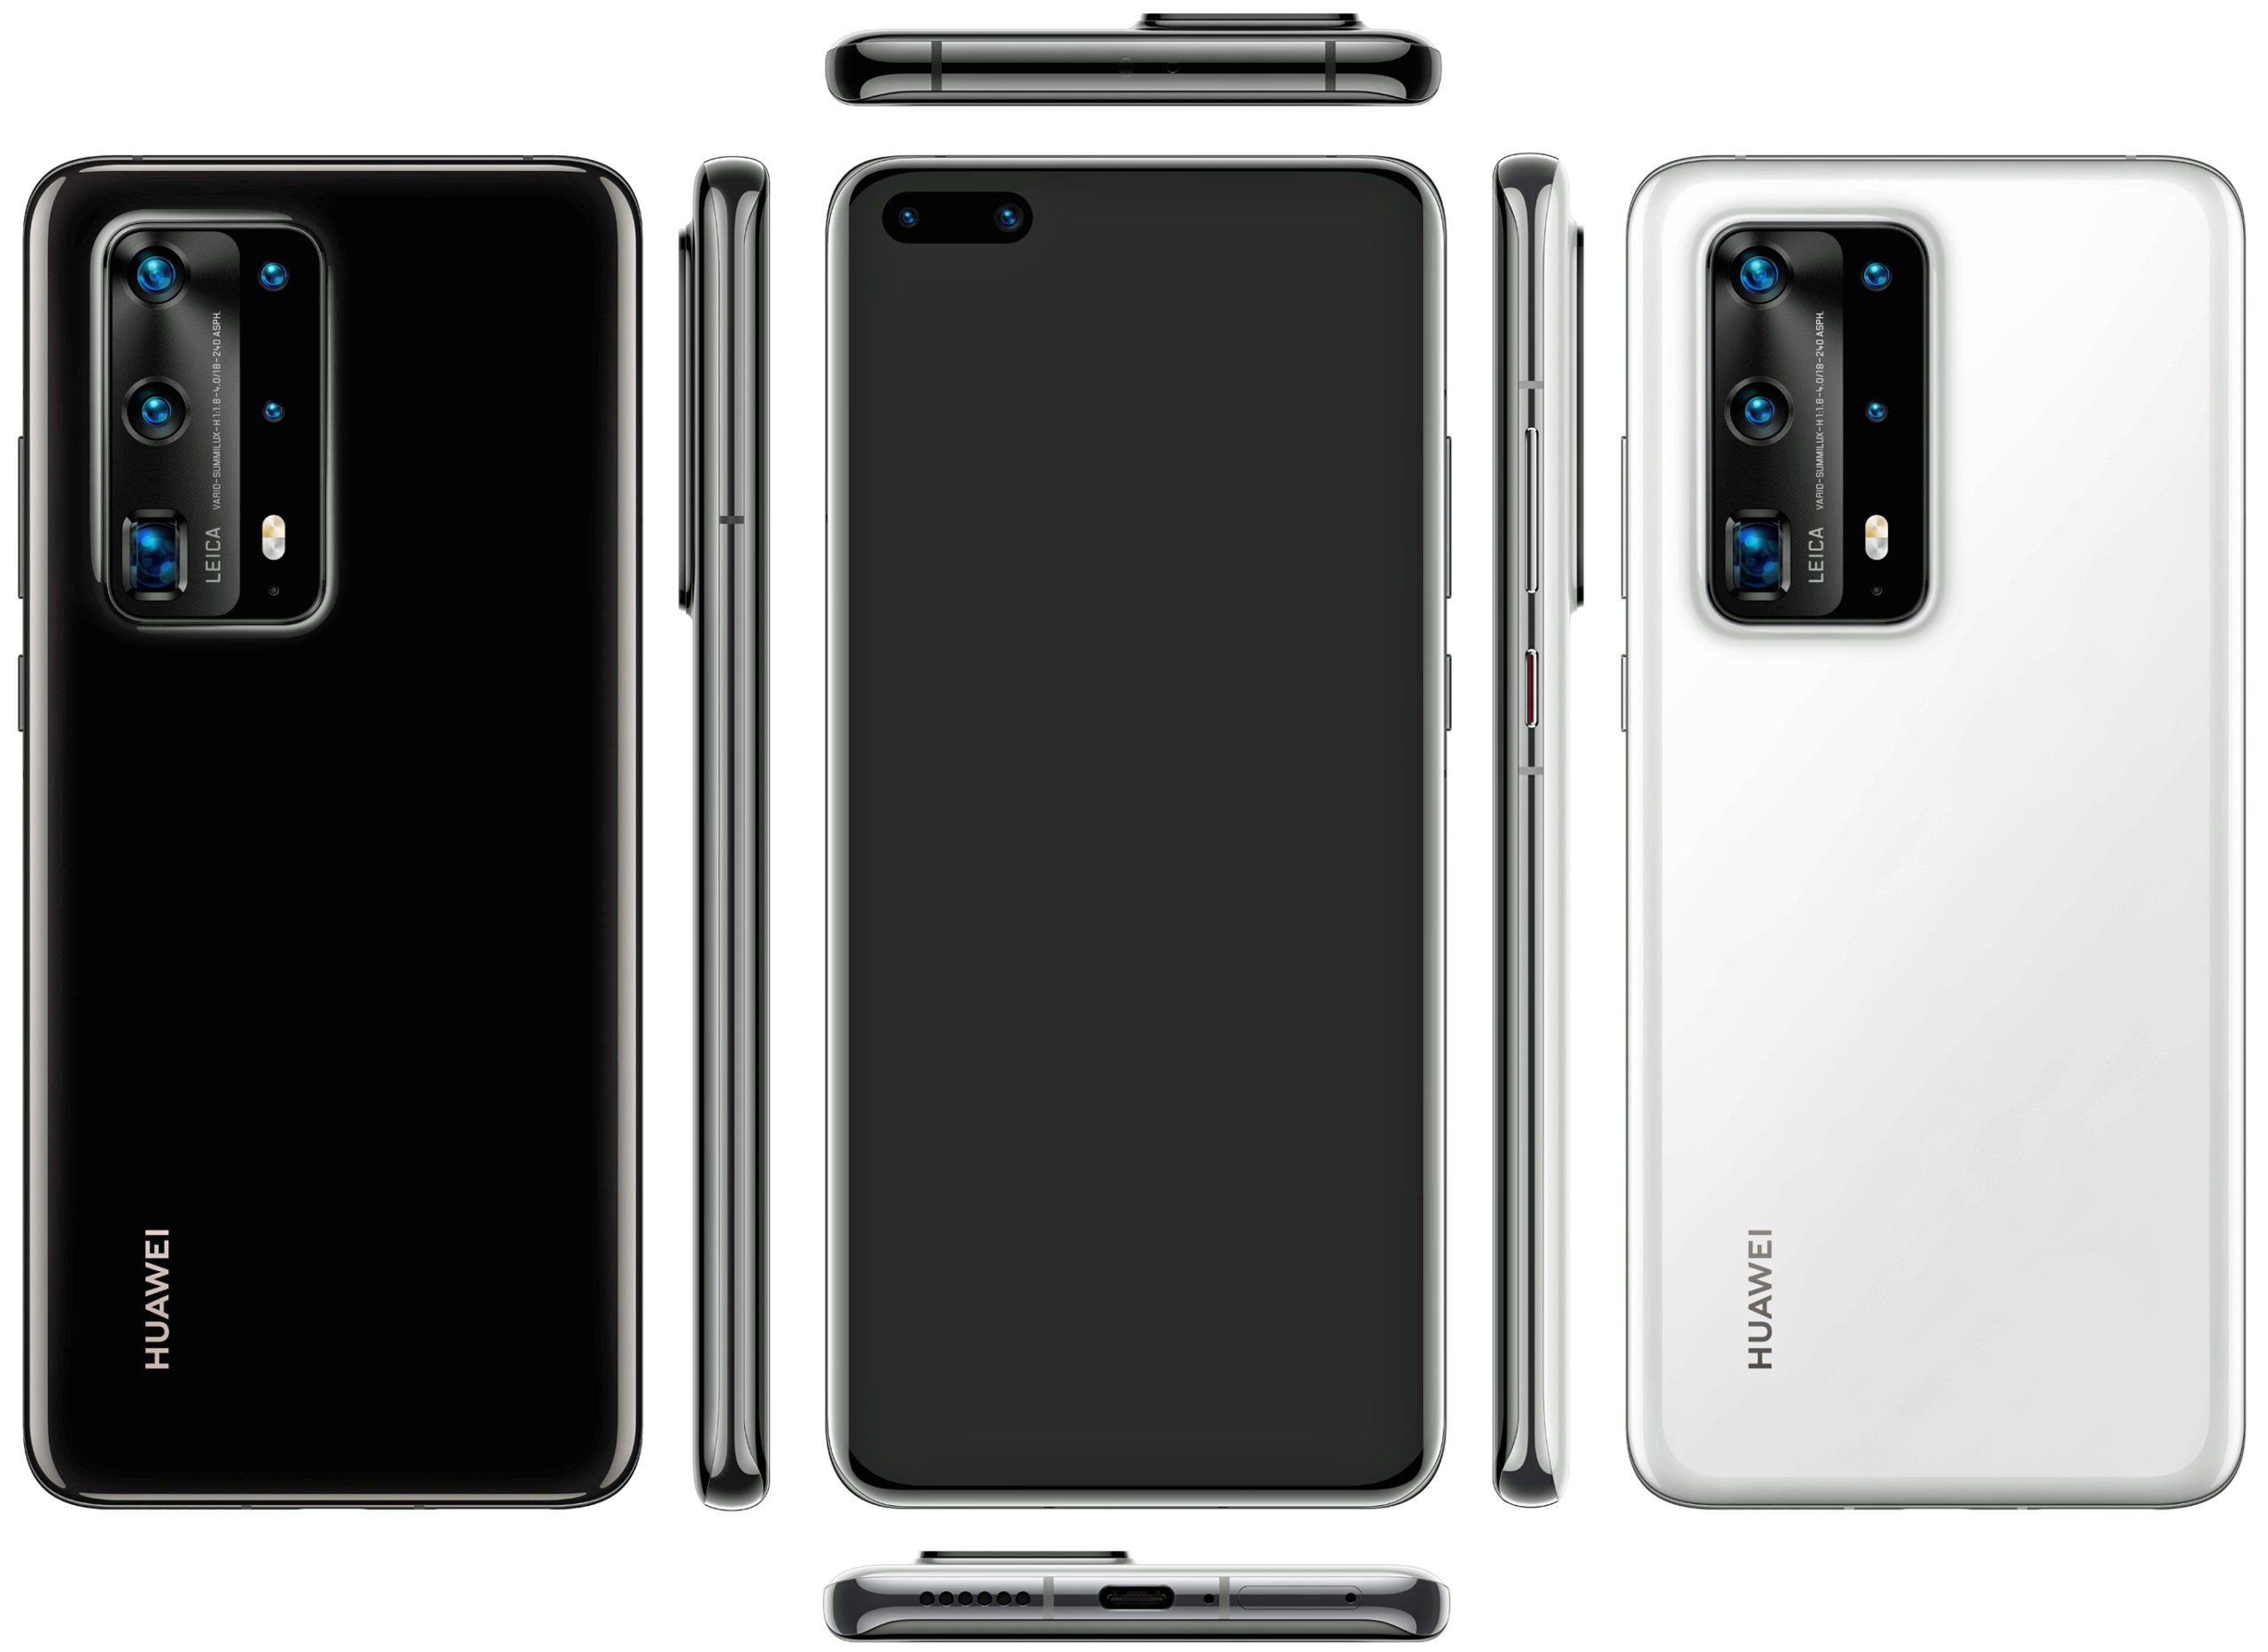 Gjennomgang av smarttelefonen Huawei P40 Pro Premium med hovedegenskapene